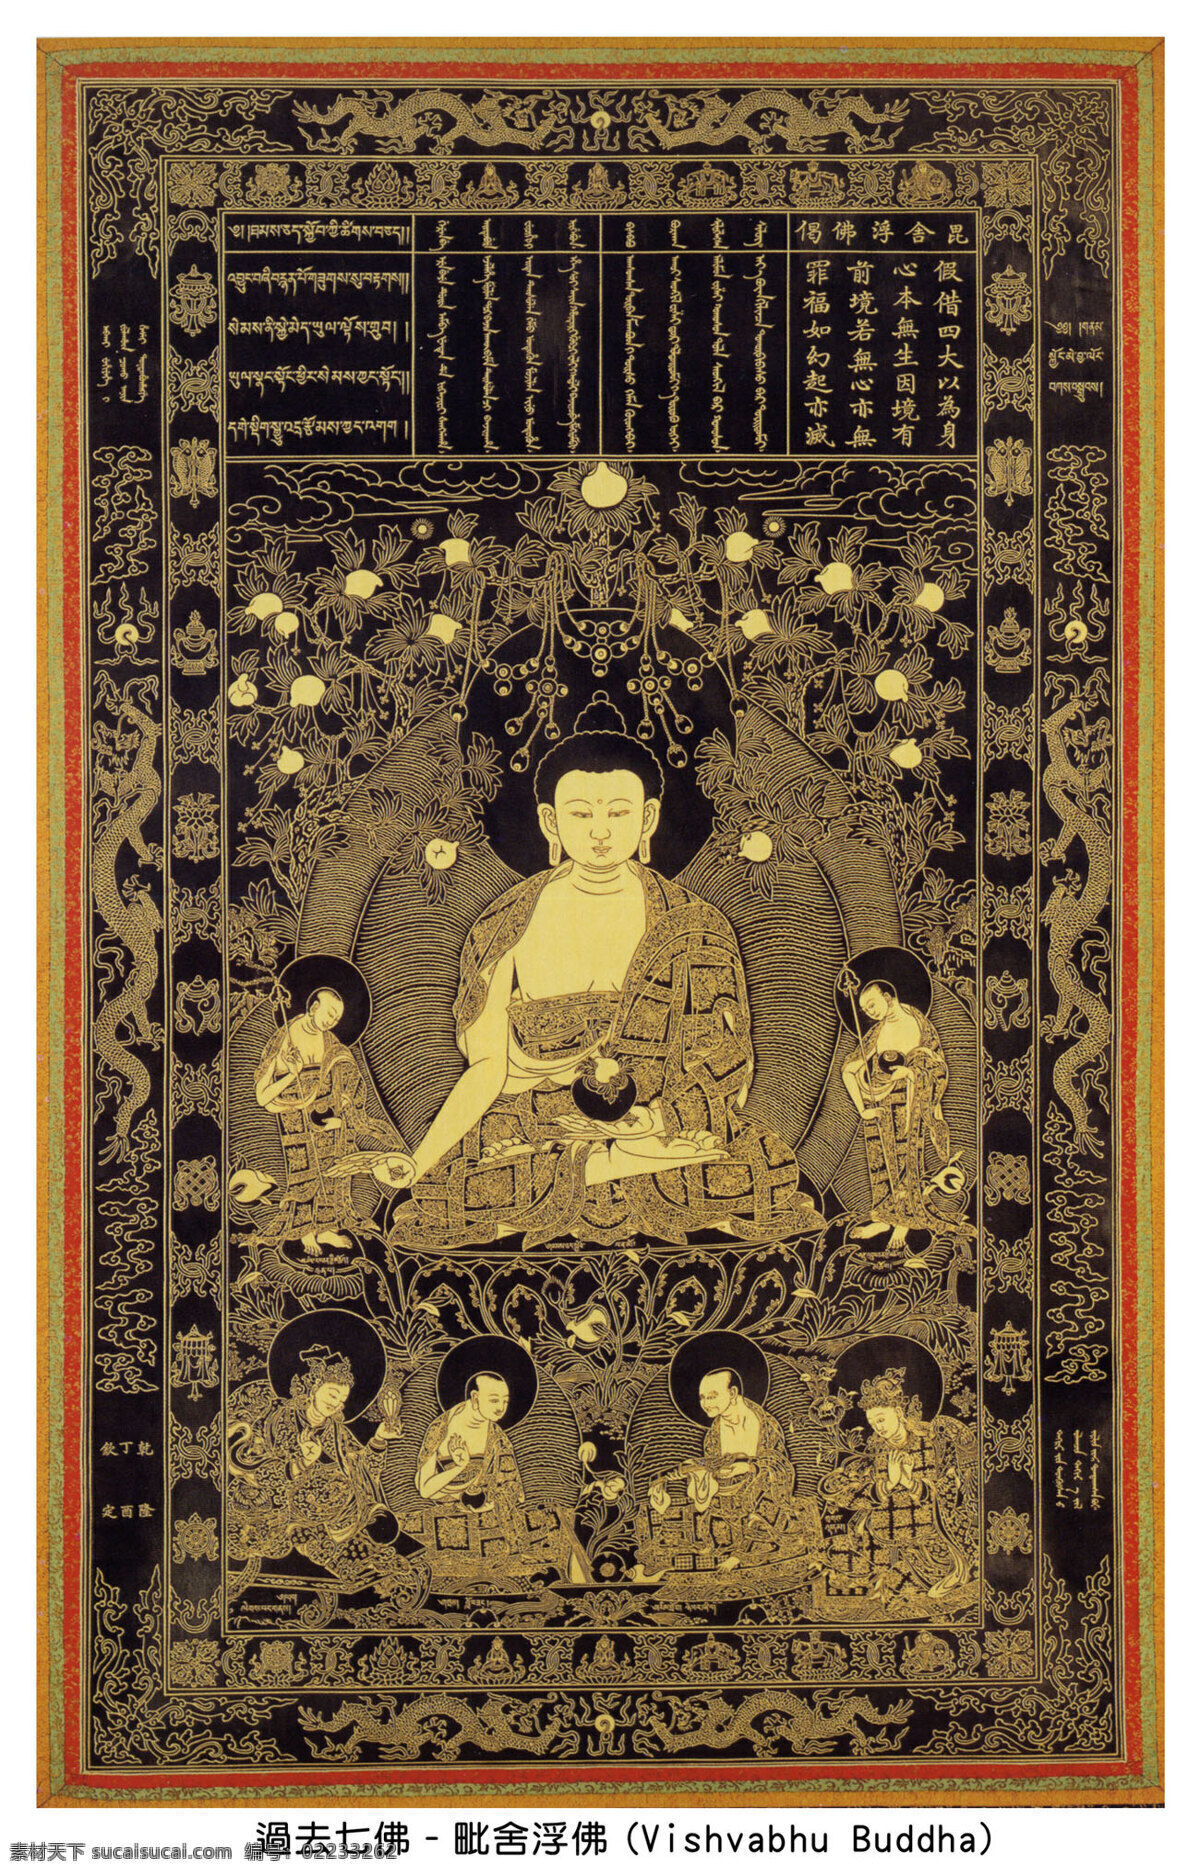 过去七佛 毗舍浮佛 汉传佛教 佛像 宗教信仰 文化艺术 绘画 艺术 佛教